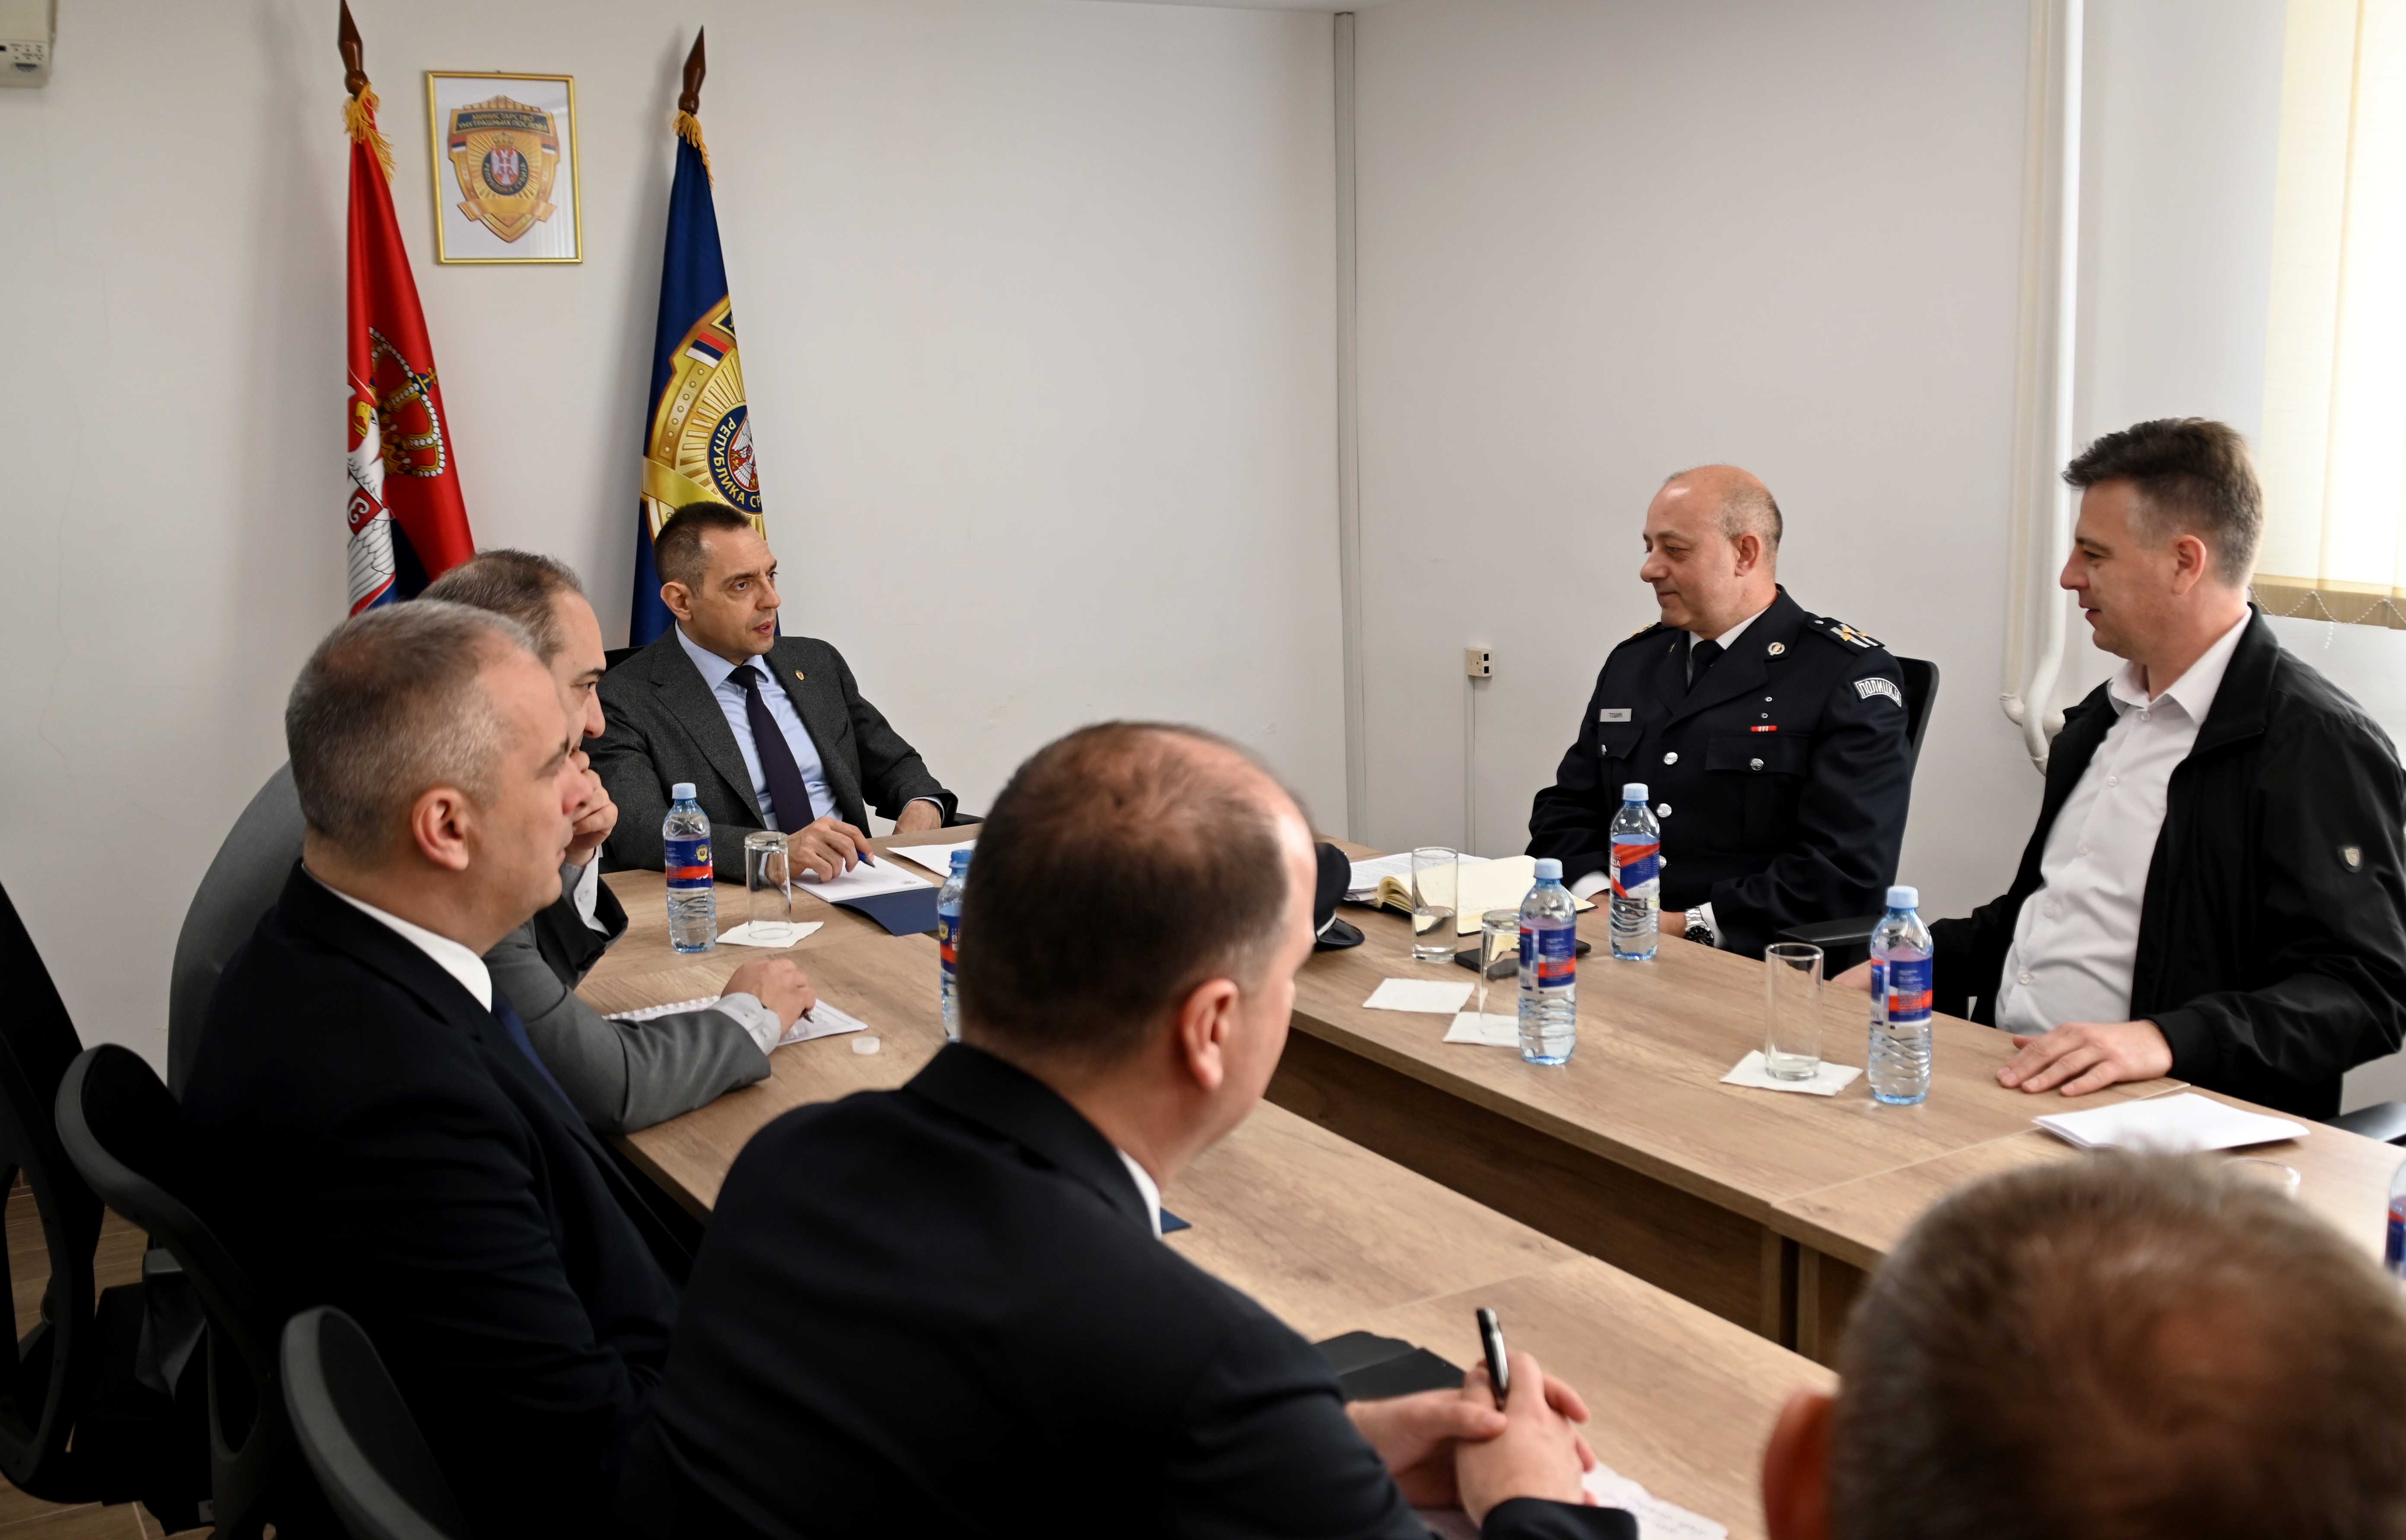 Министар Александар Вулин обишао Полицијску управу Пирот: Држава интензивно јача капацитете полиције, али и улаже у обуку кадрова